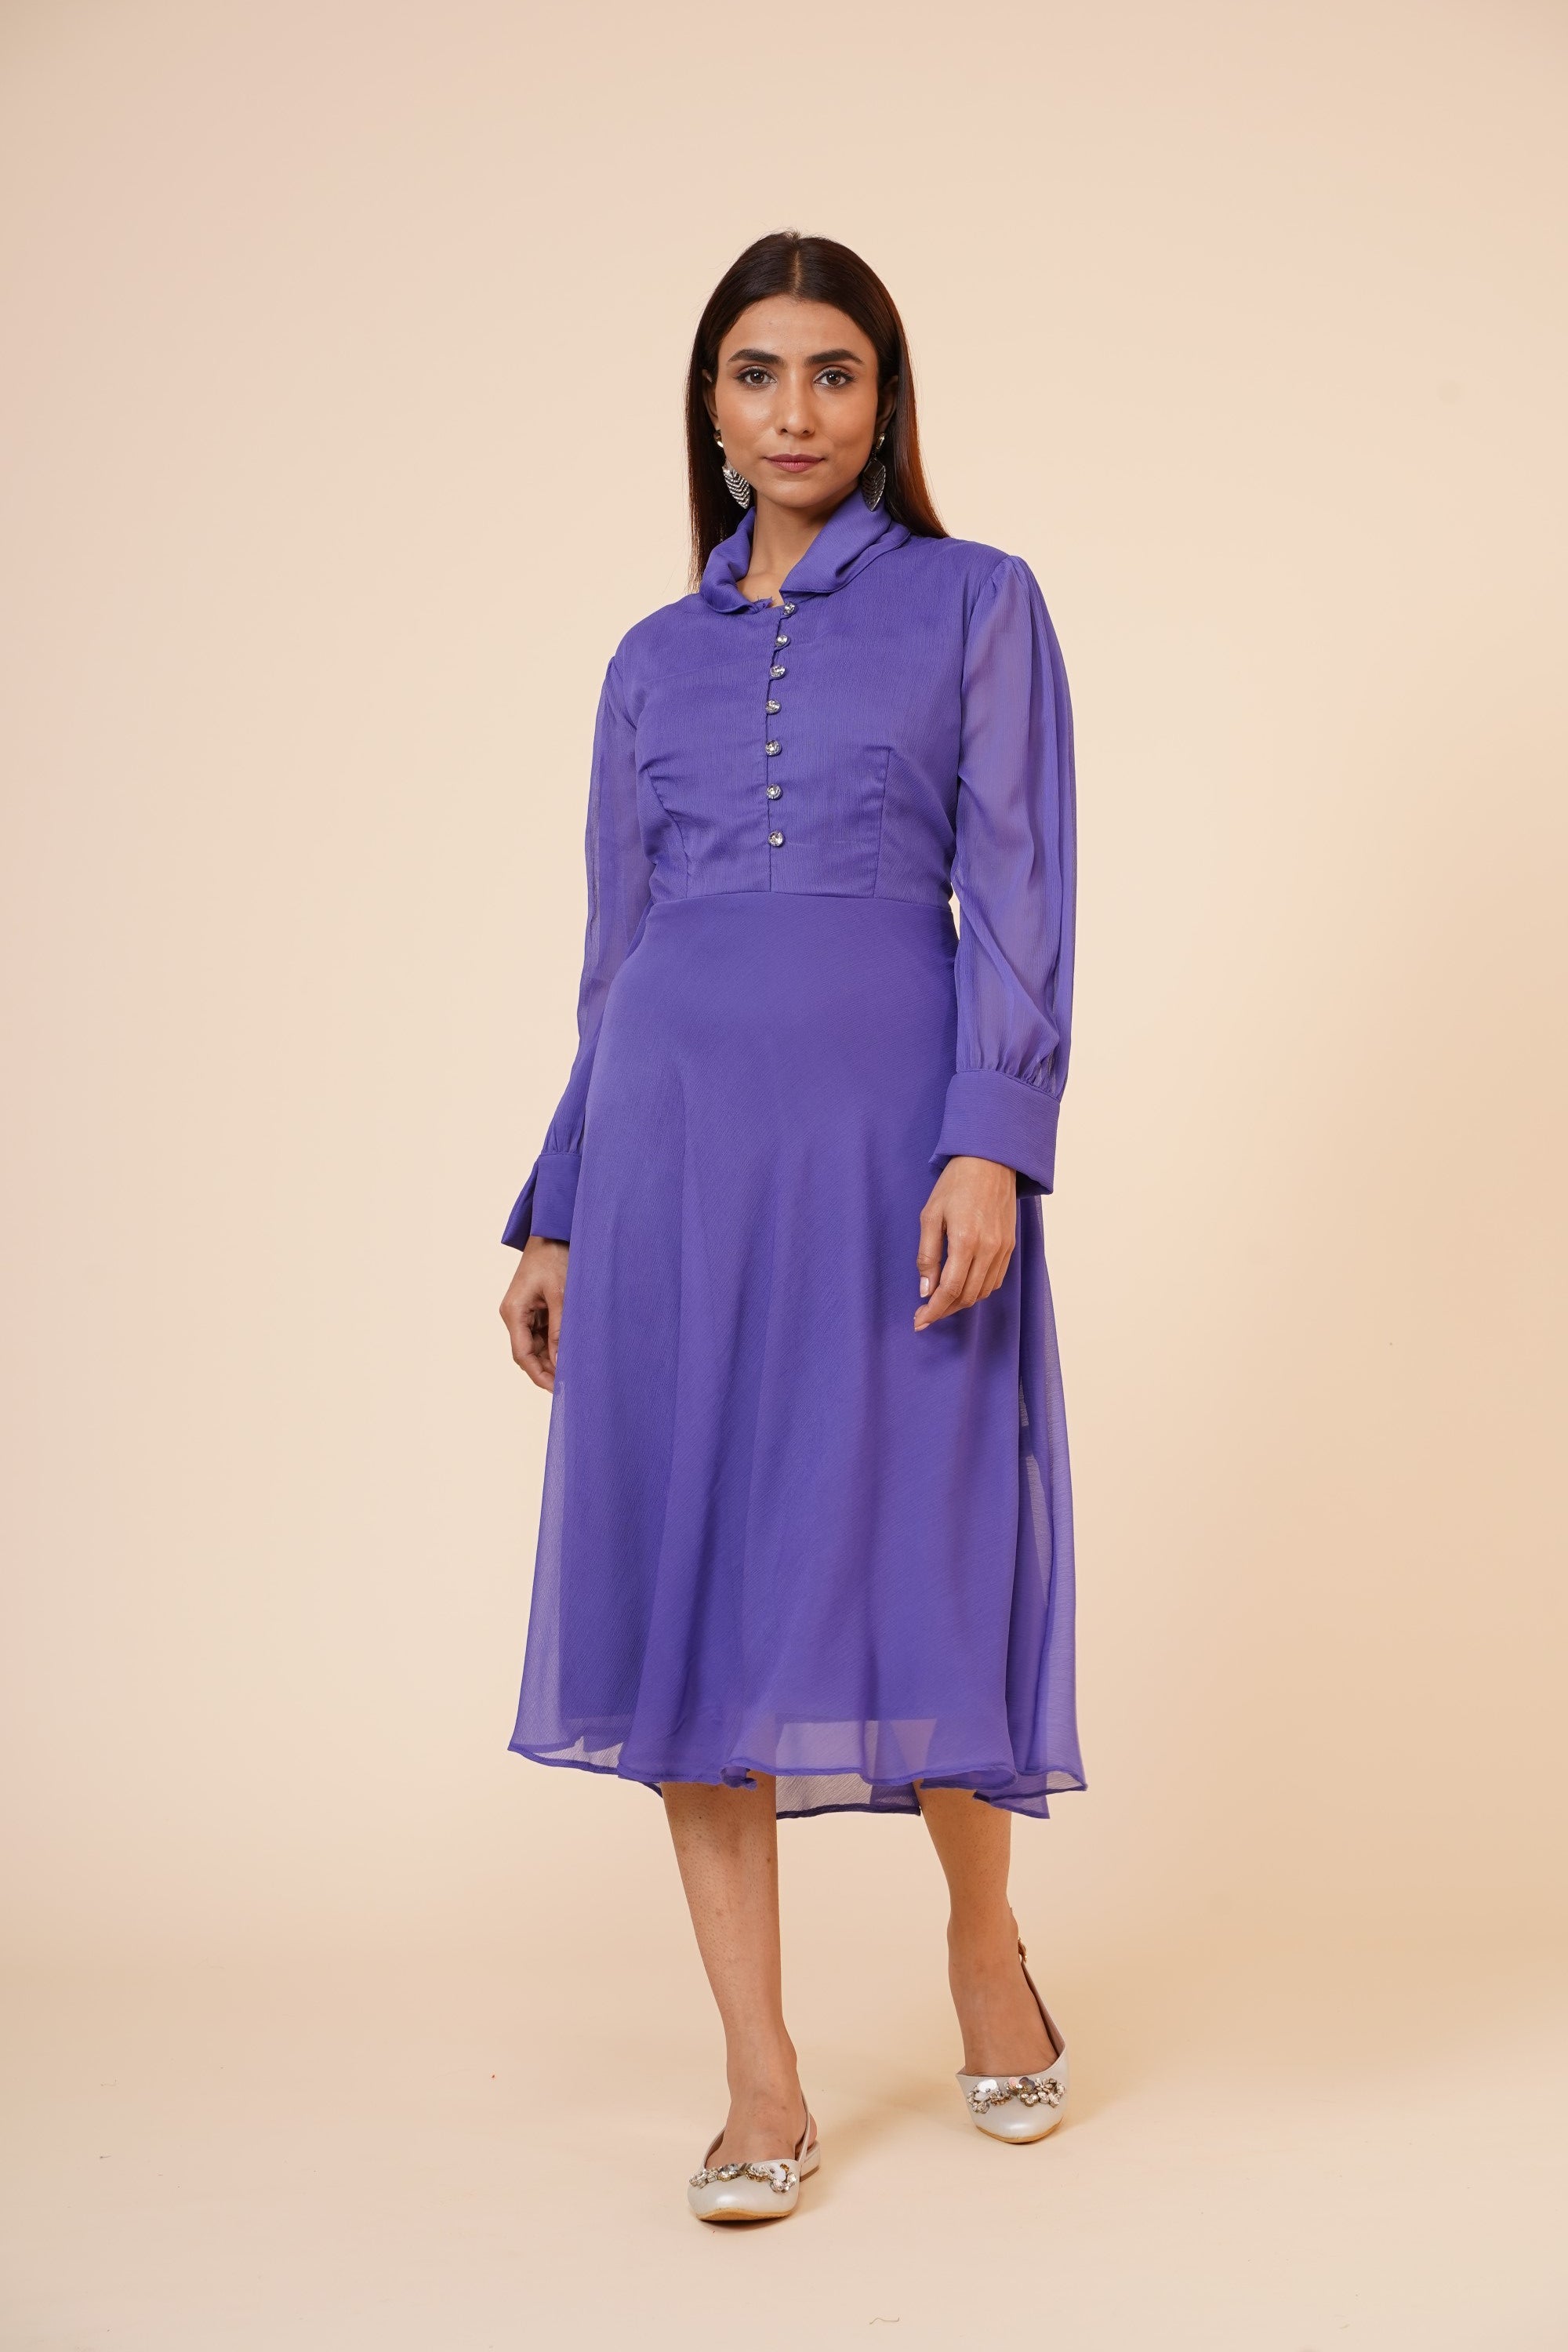 Women's Mauve Chiiffon Casual Midi Dress - MIRACOLOS by Ruchi